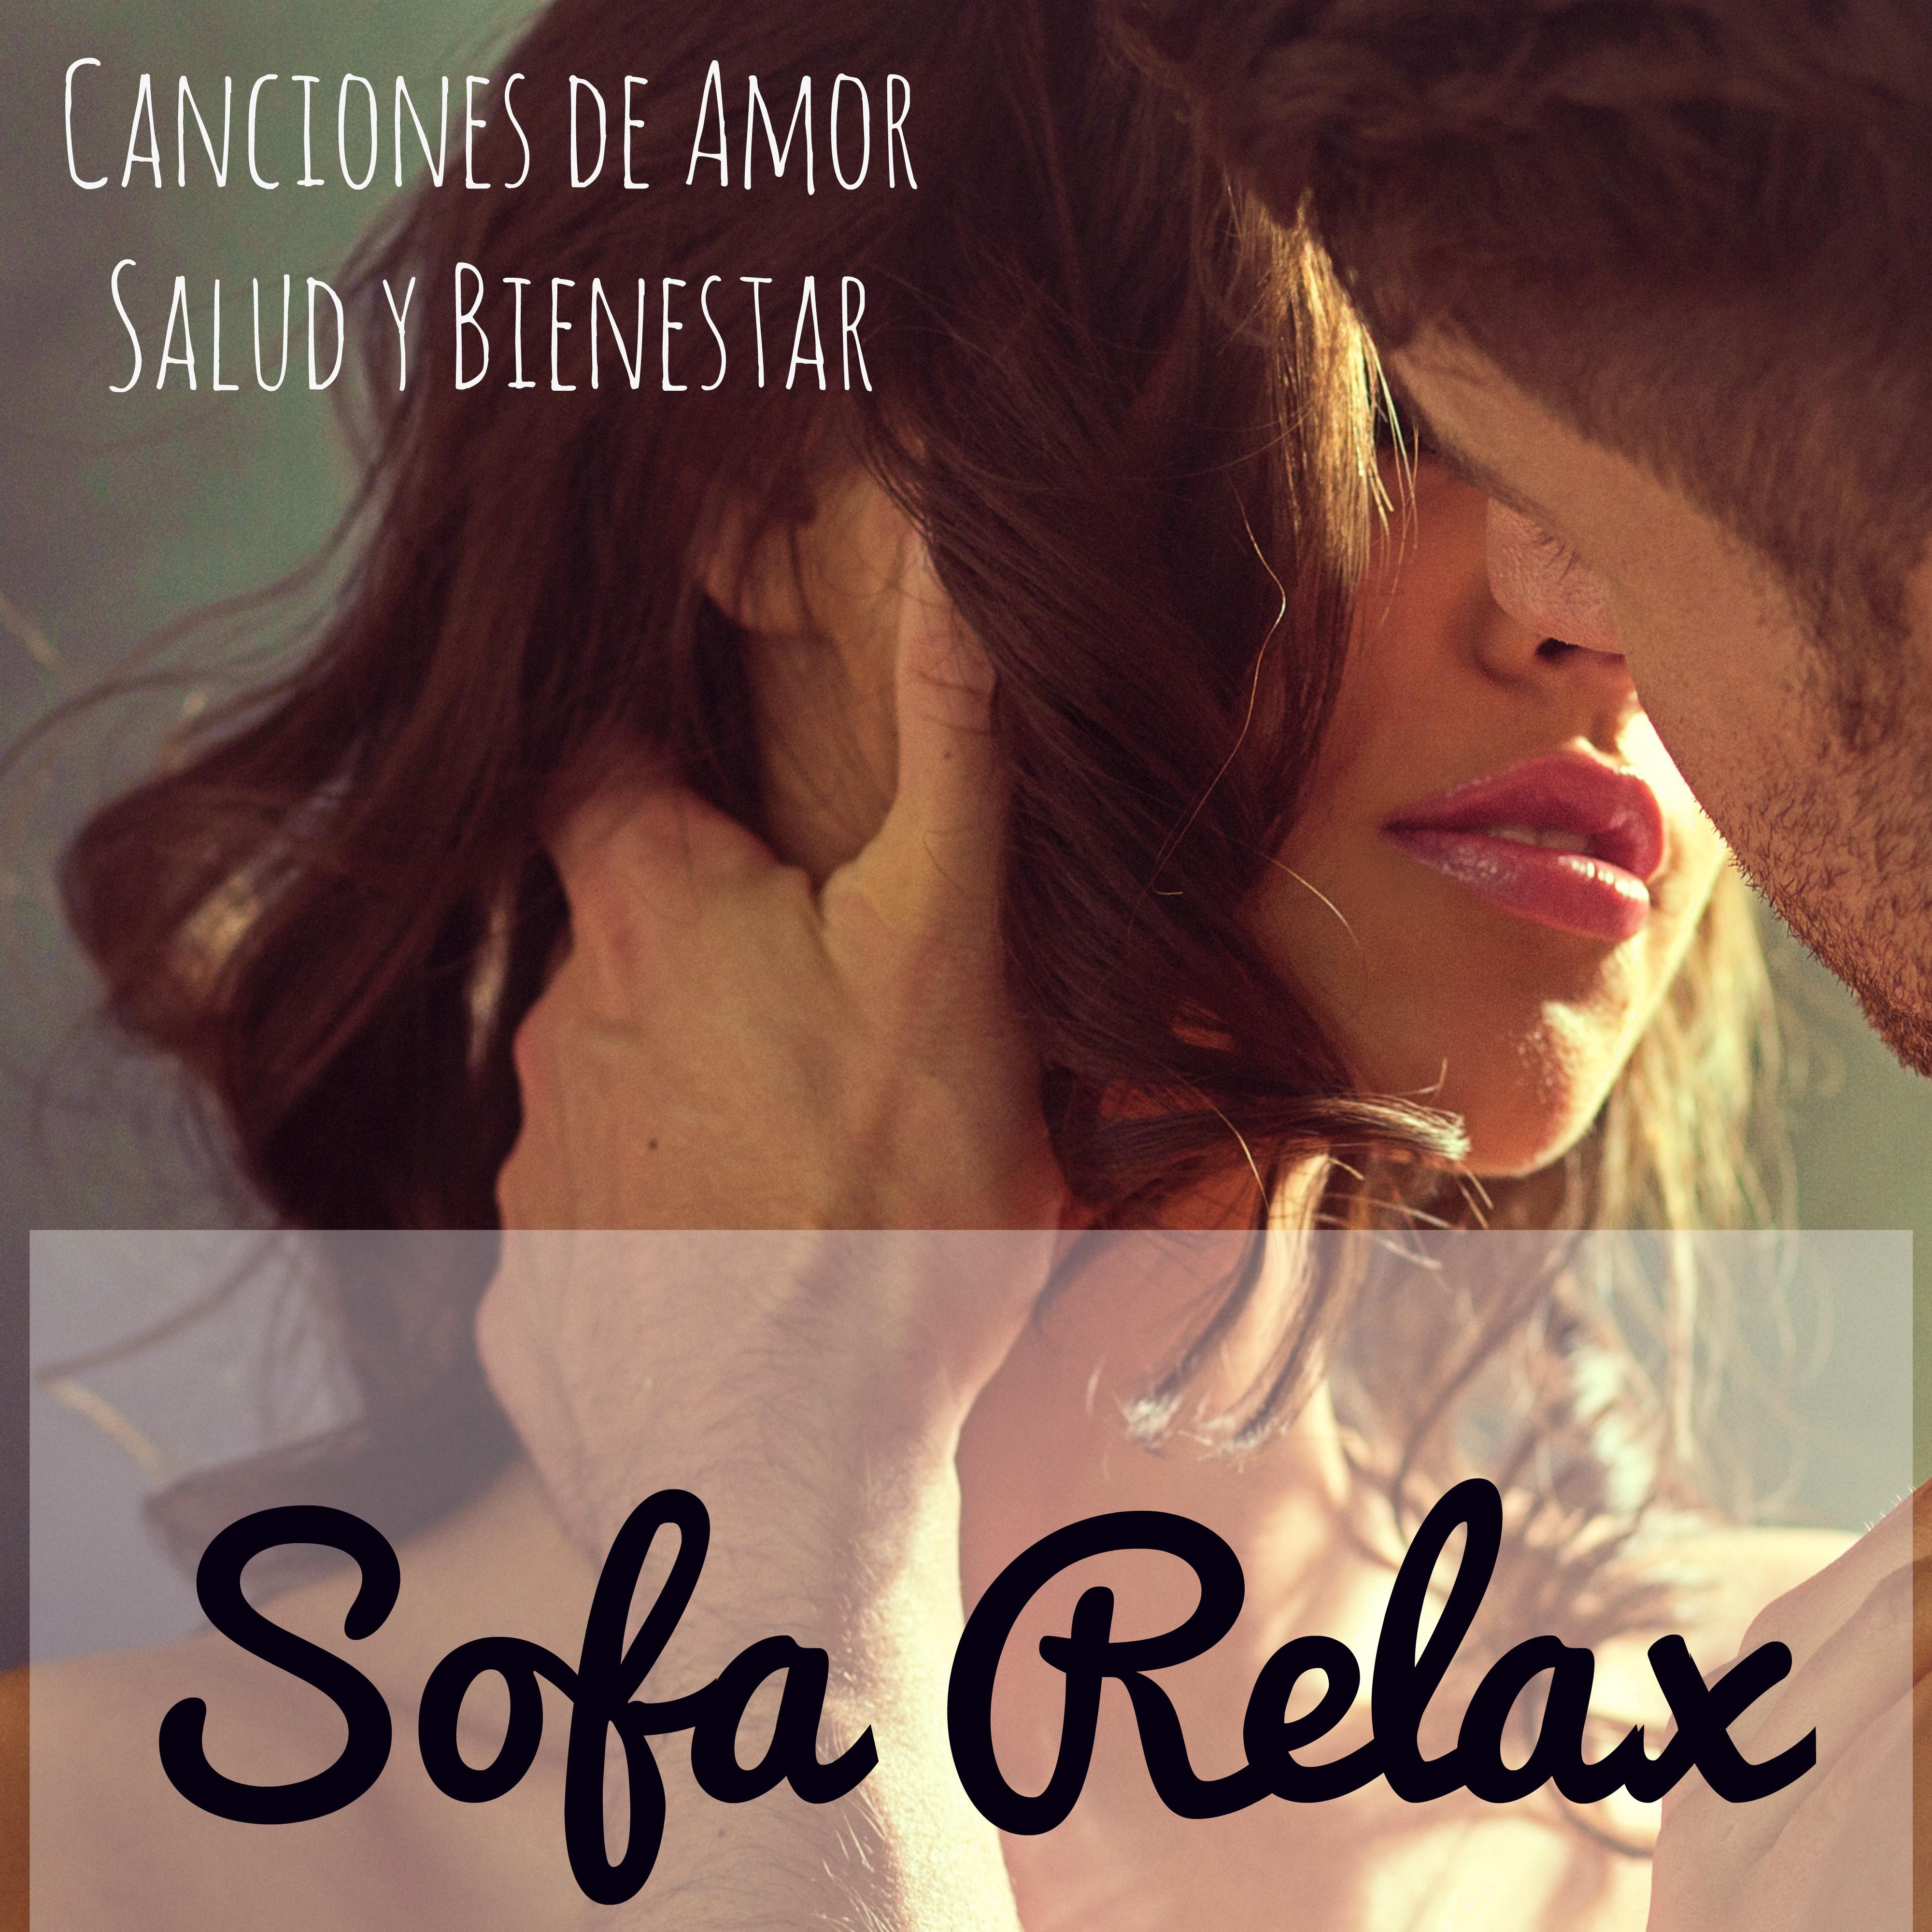 Sofa Relax - Canciones de Amor Salud y Bienestar Ejercicios de la Mente y Cuerpo, Música Lounge Chillout Romantica Instrumental